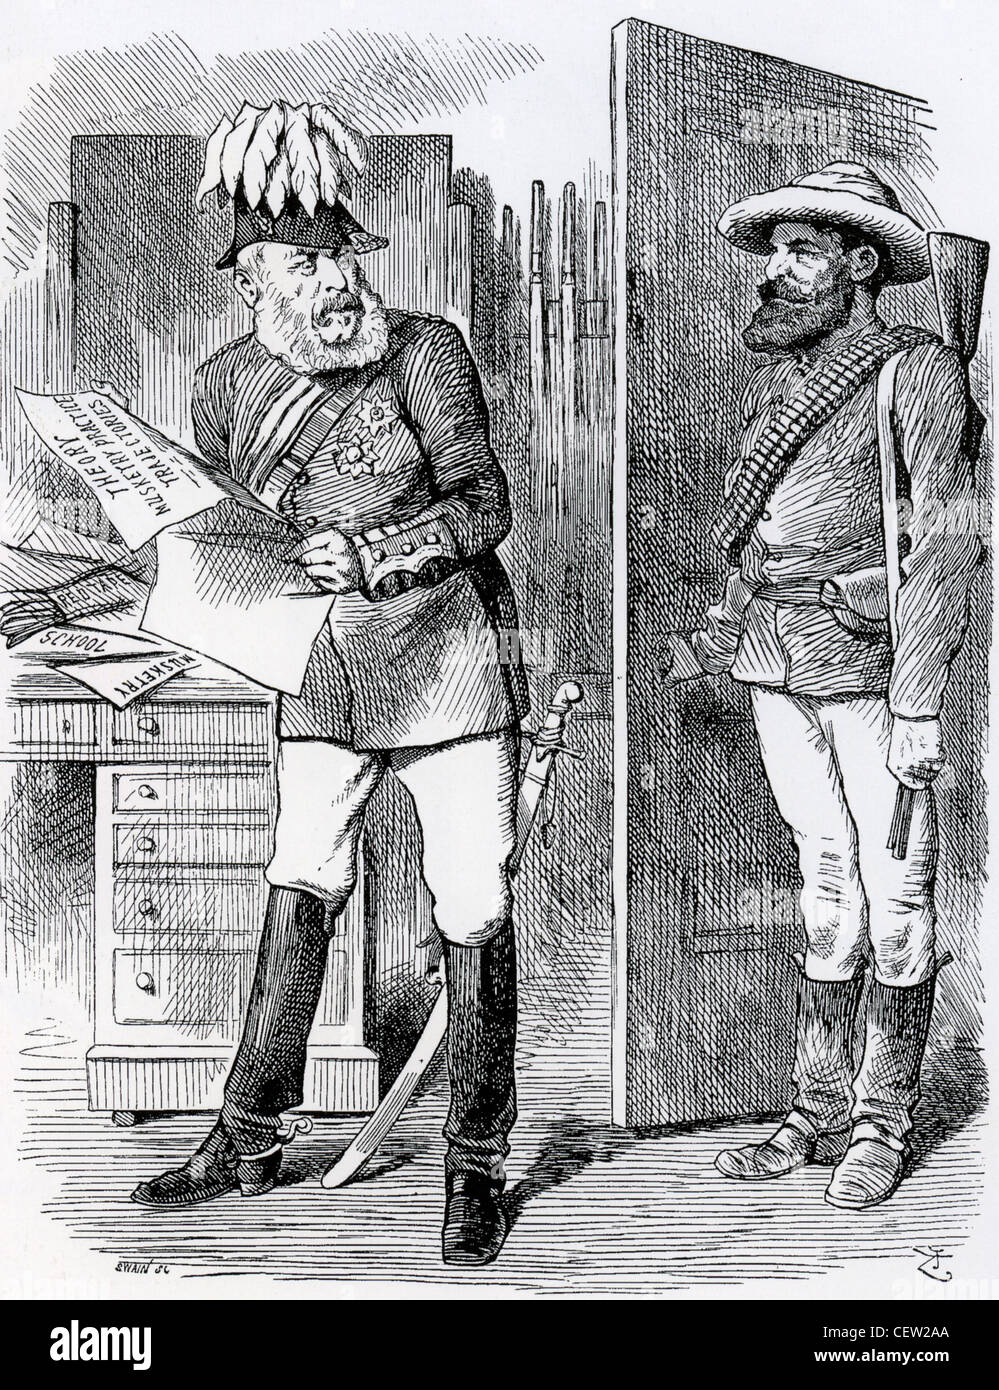 Guerra de los bóers Punch cartoon 1881 se burla del Señor Roberts' habilidades de disparo del ejército. Véase la descripción a continuación. Foto de stock